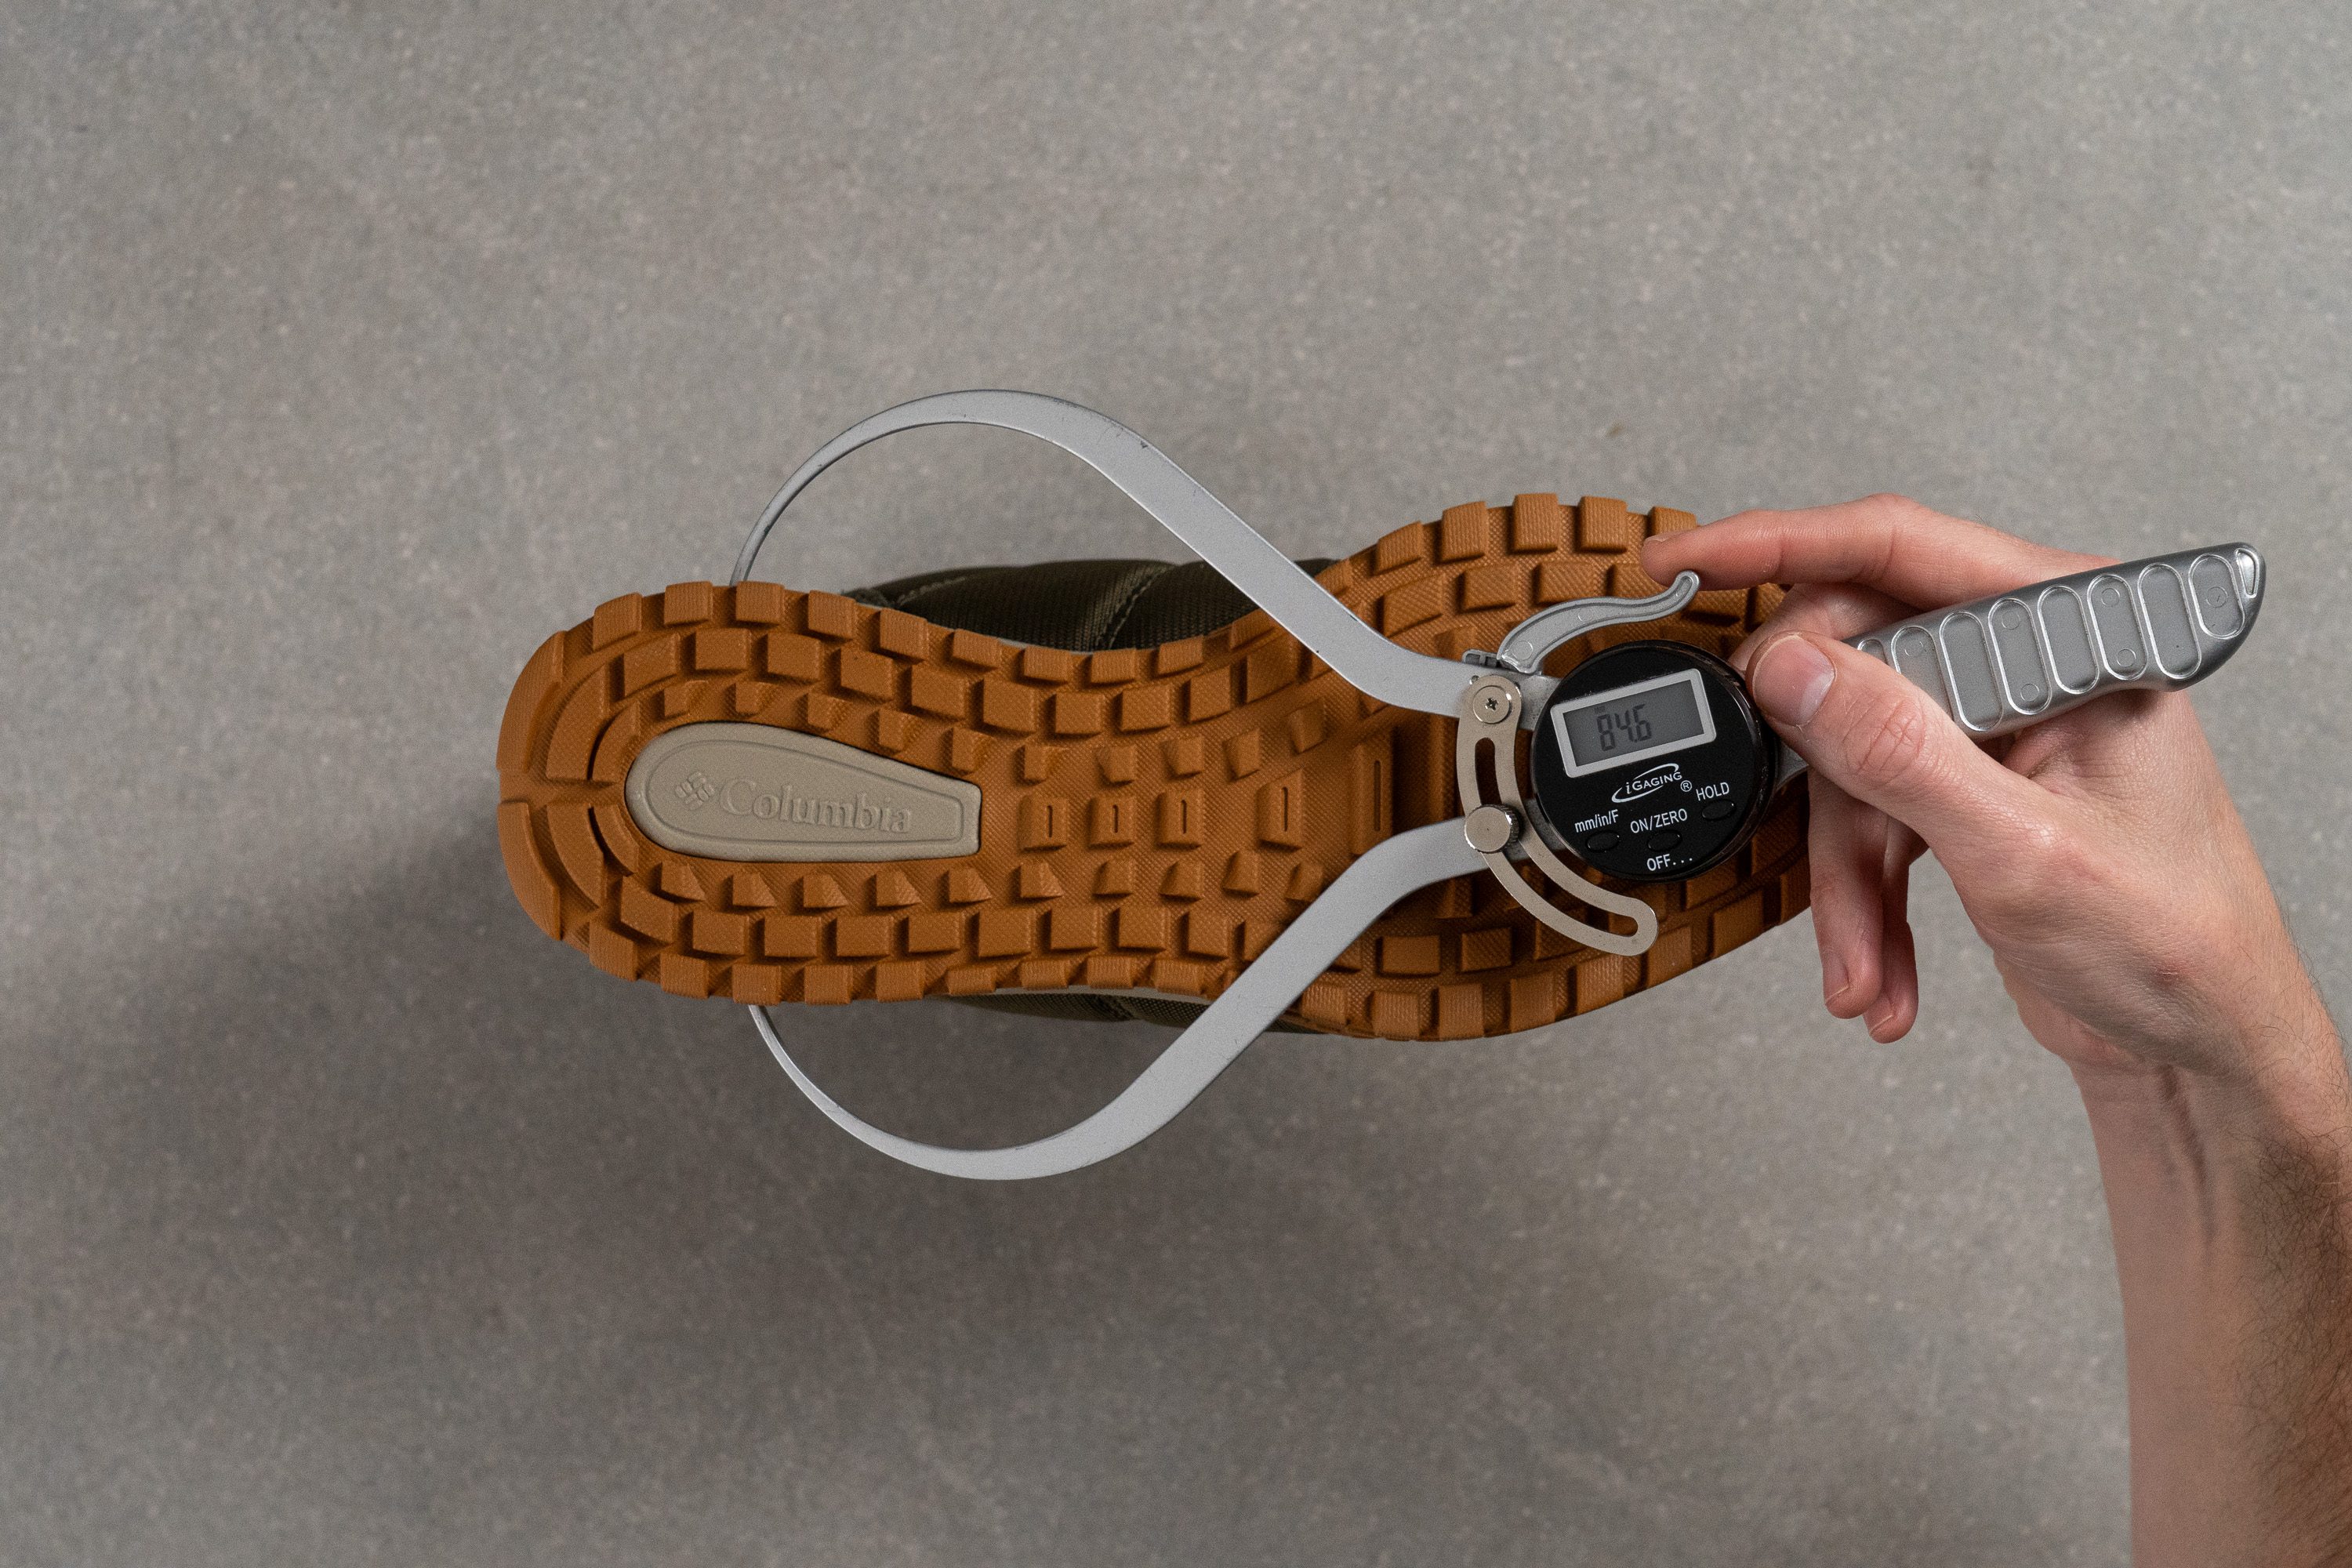 Columbia zapatillas de running Adidas hombre pista talla 33.5 Midsole width in the heel